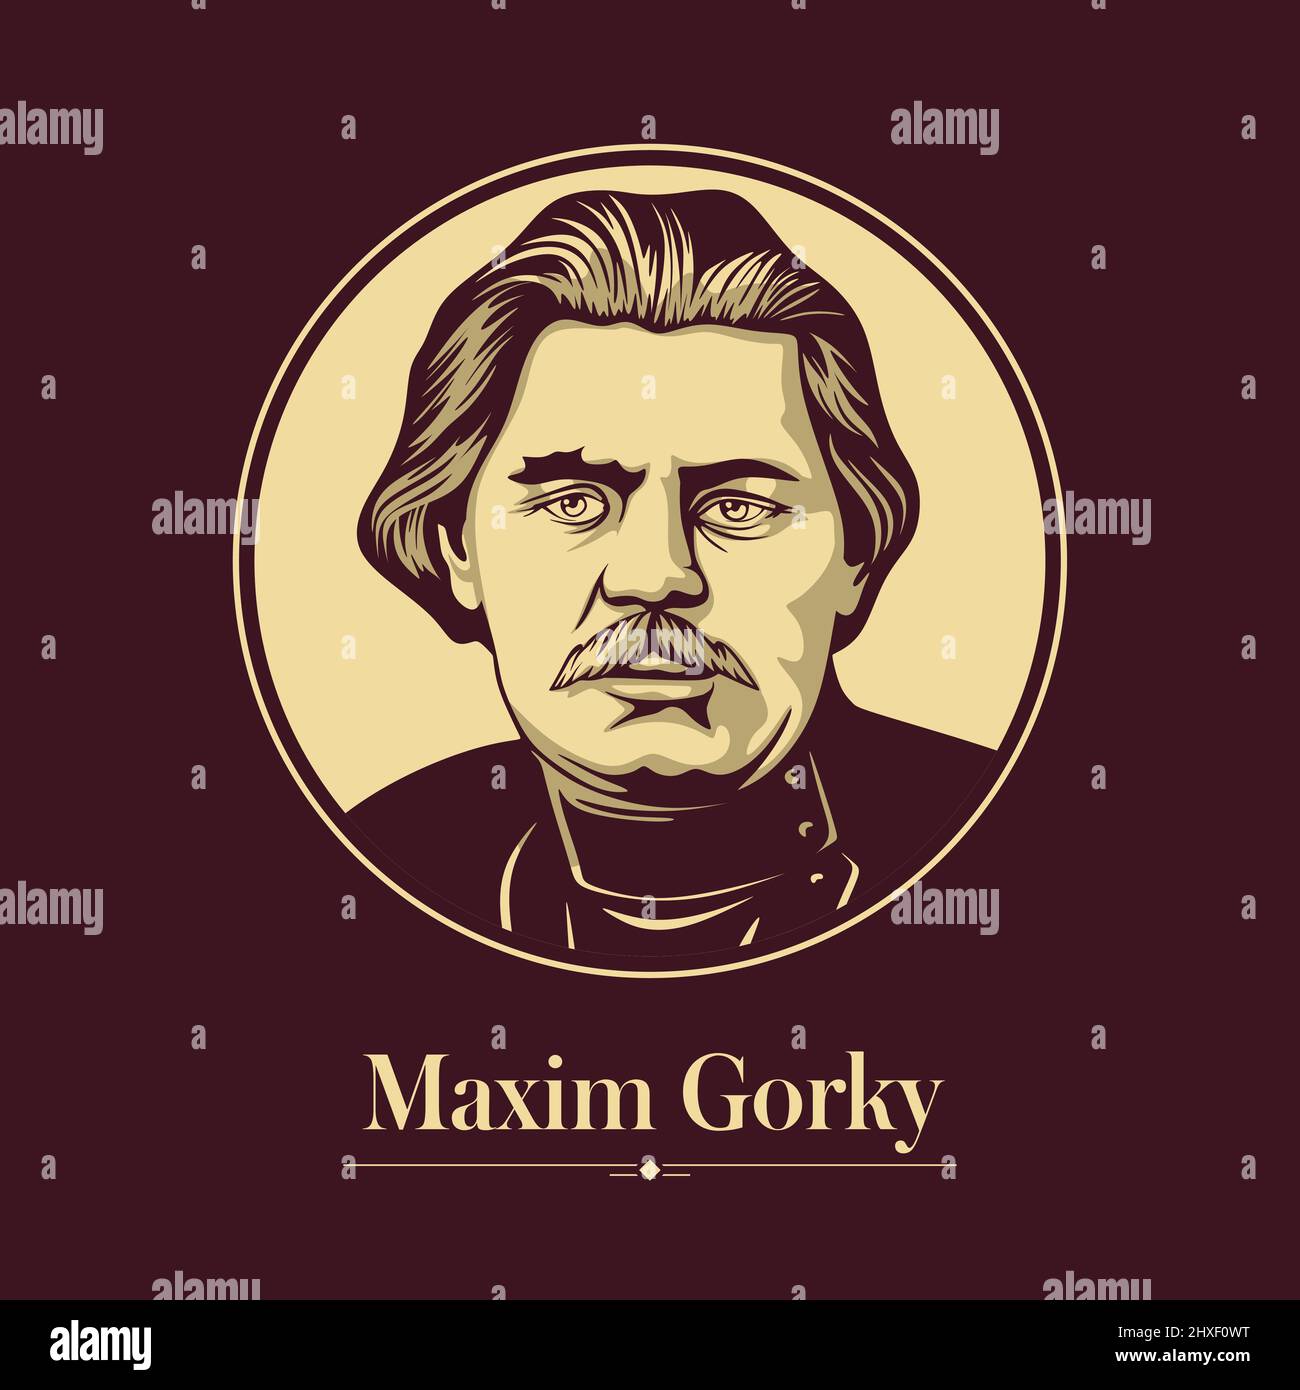 Portrait vectoriel d'un écrivain russe. Maxim Gorky était écrivain et activiste politique russe. Il a été nommé cinq fois pour le prix Nobel en litre Illustration de Vecteur